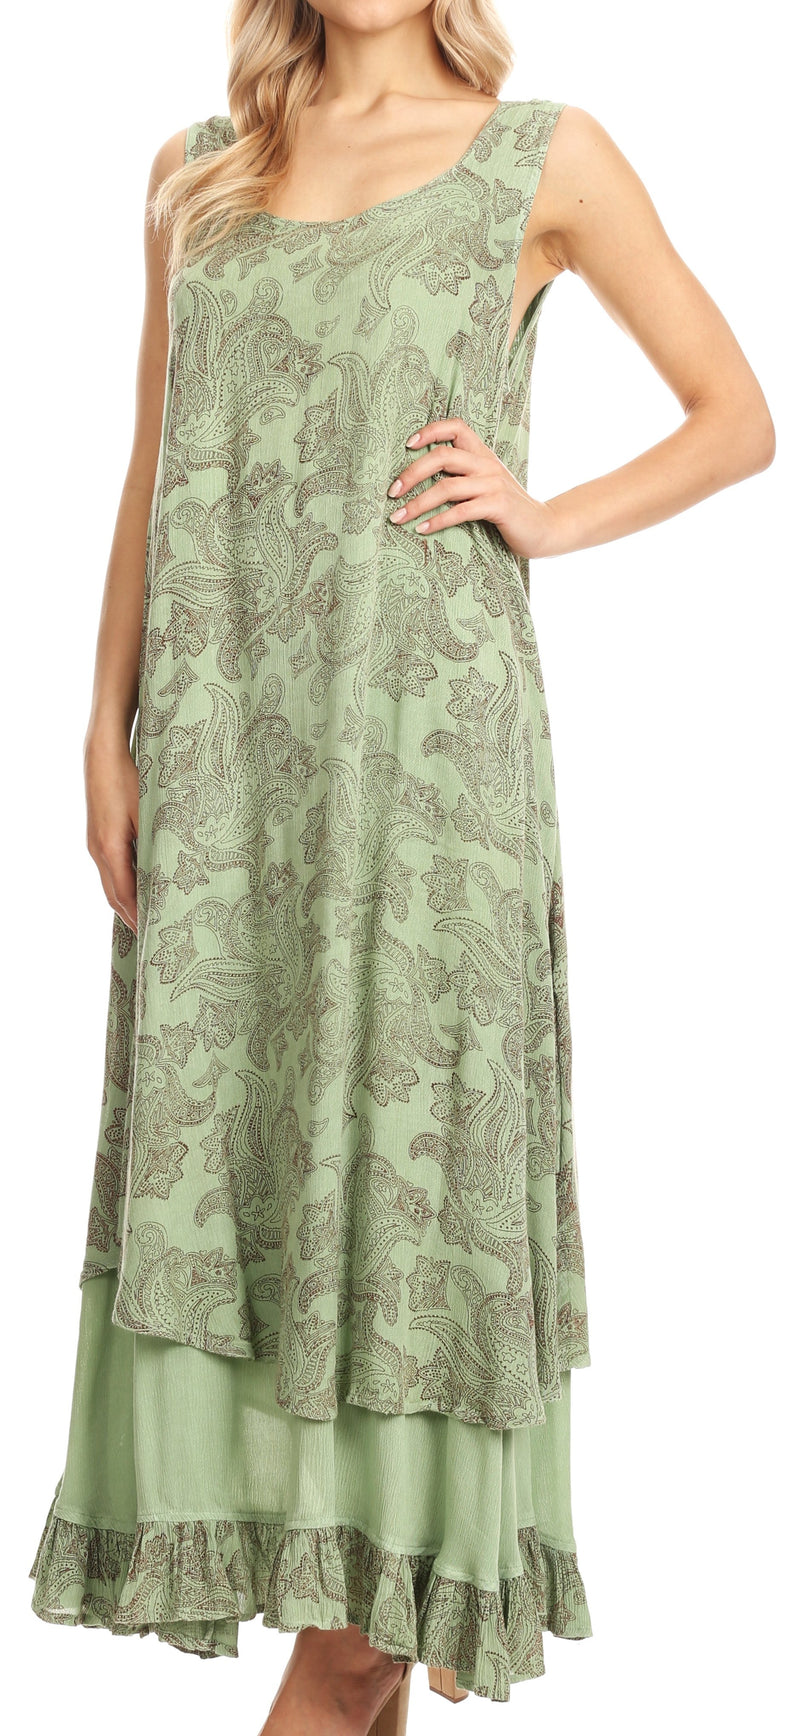 Sakkas Paak Tall Long Batik Paisely Print Ruffle Hem Lined Caftan Tank Top Dress